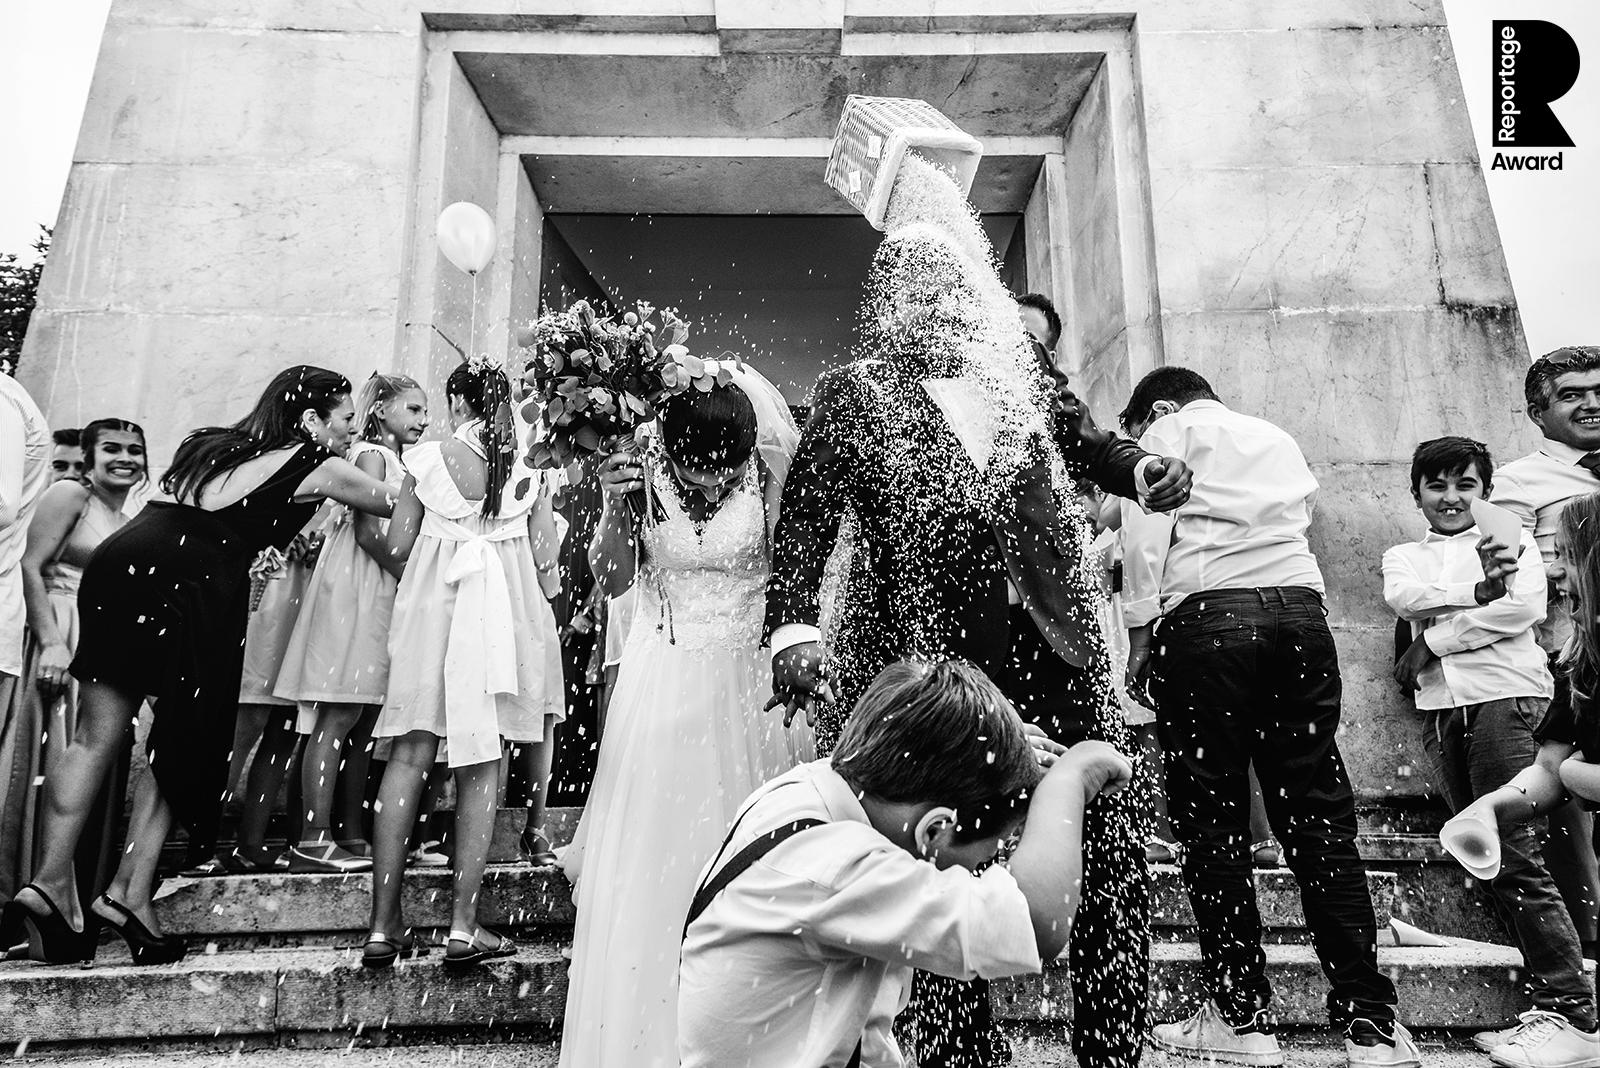 Fotos de Casamento Premiadas - The Lovellers by Mauro Correia: Fotógrafo de Casamentos em Coimbra e Figueira da Foz